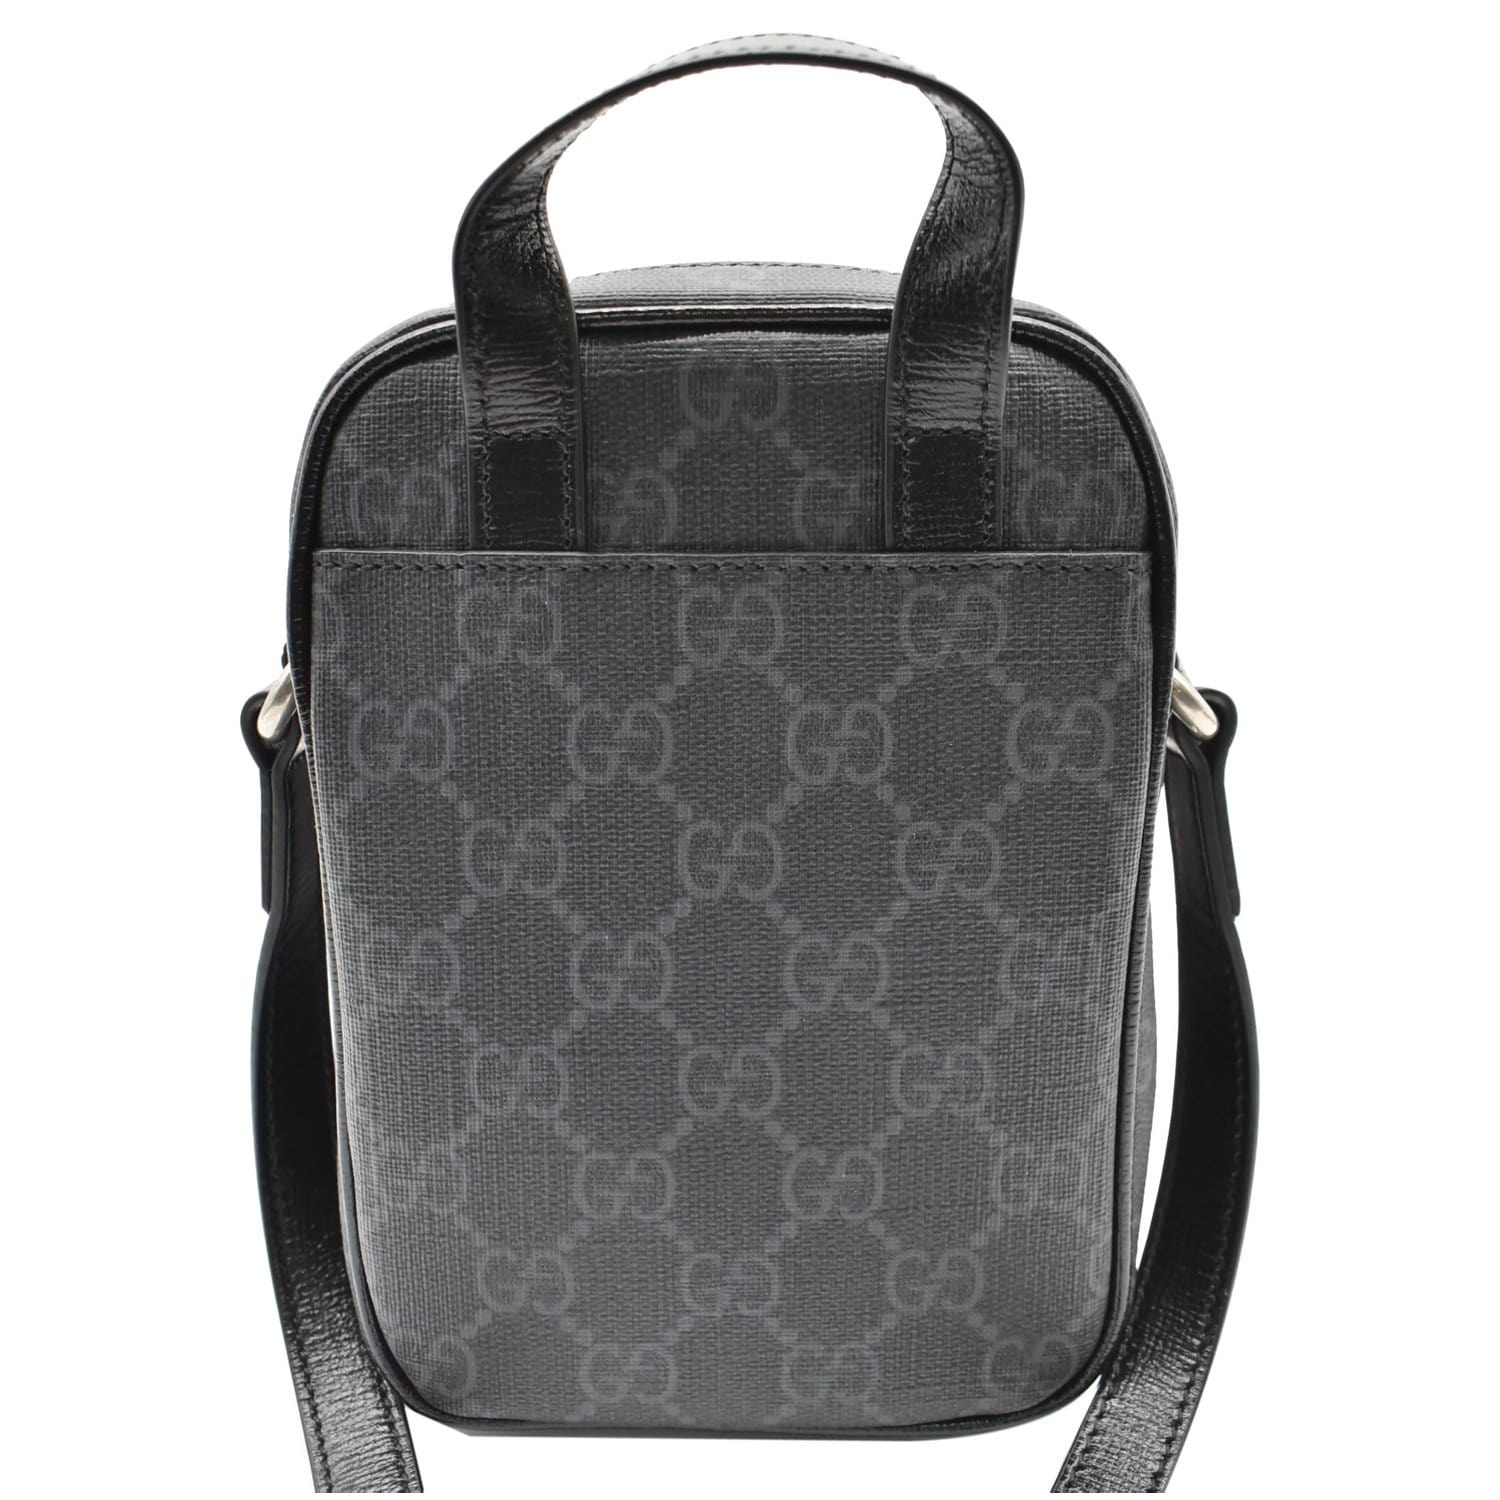 Gucci Interlocking GG Shoulder Bag Black